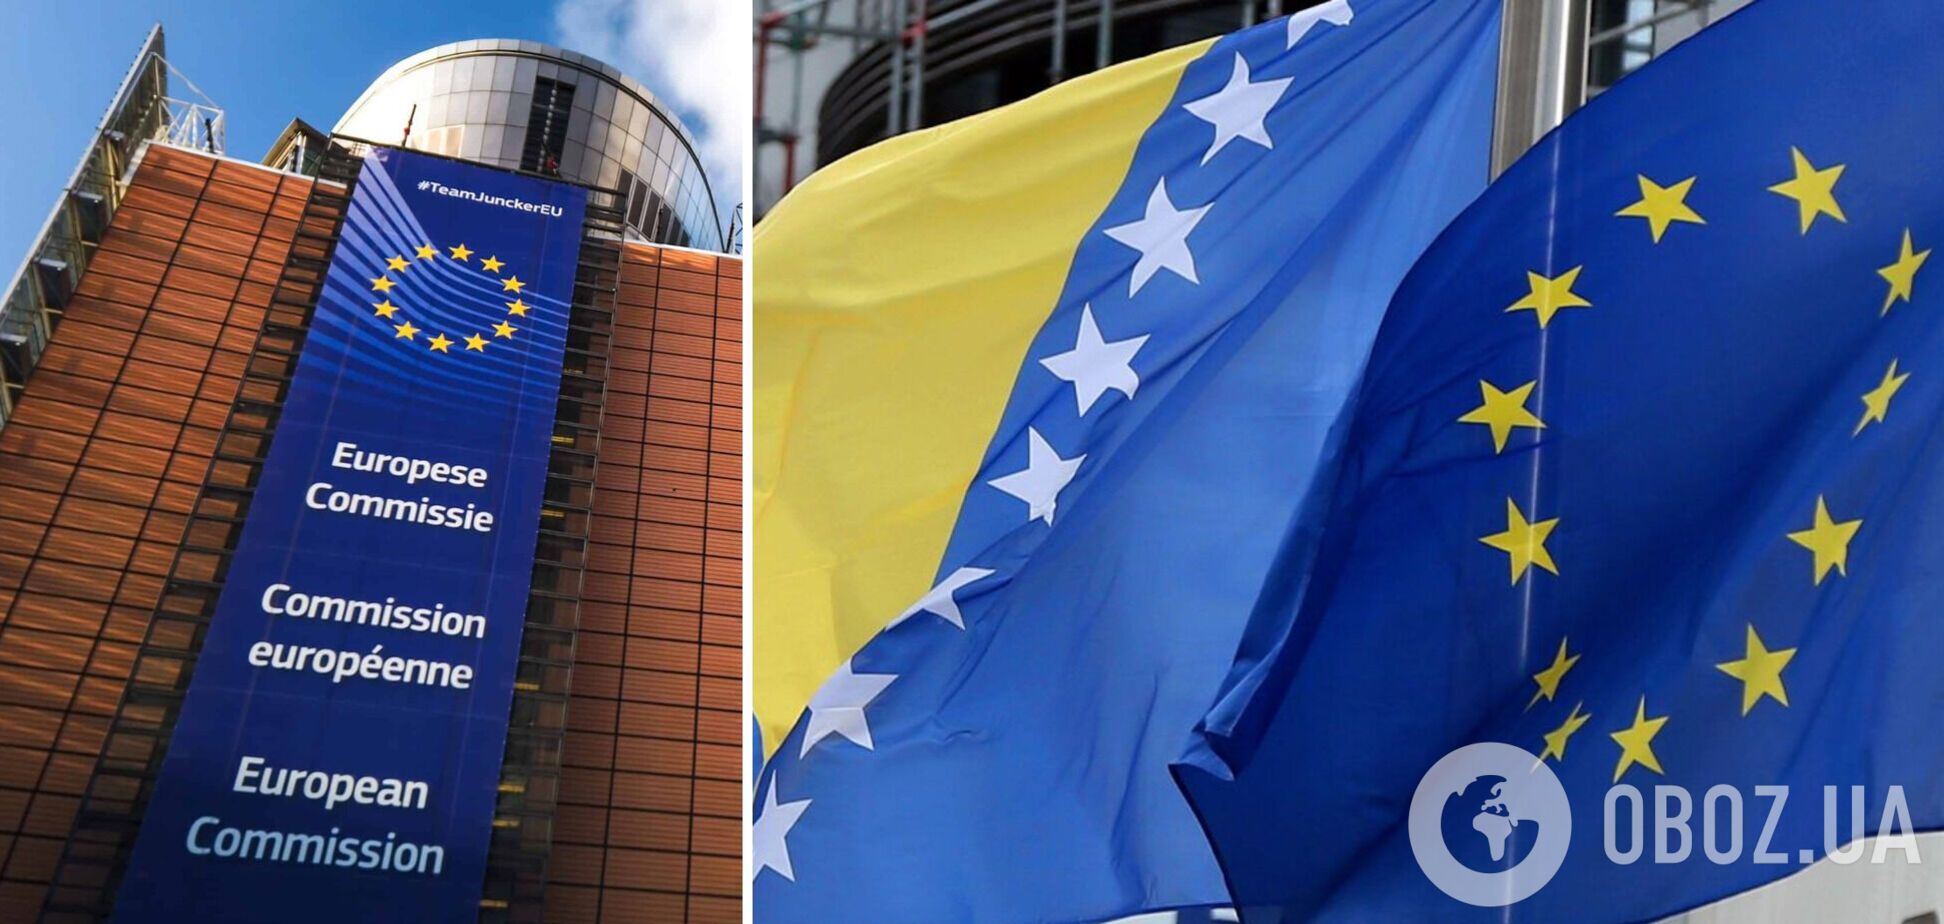 Еврокомиссия согласовала начало переговоров о вступлении в ЕС Боснии и Герцеговины: что происходит